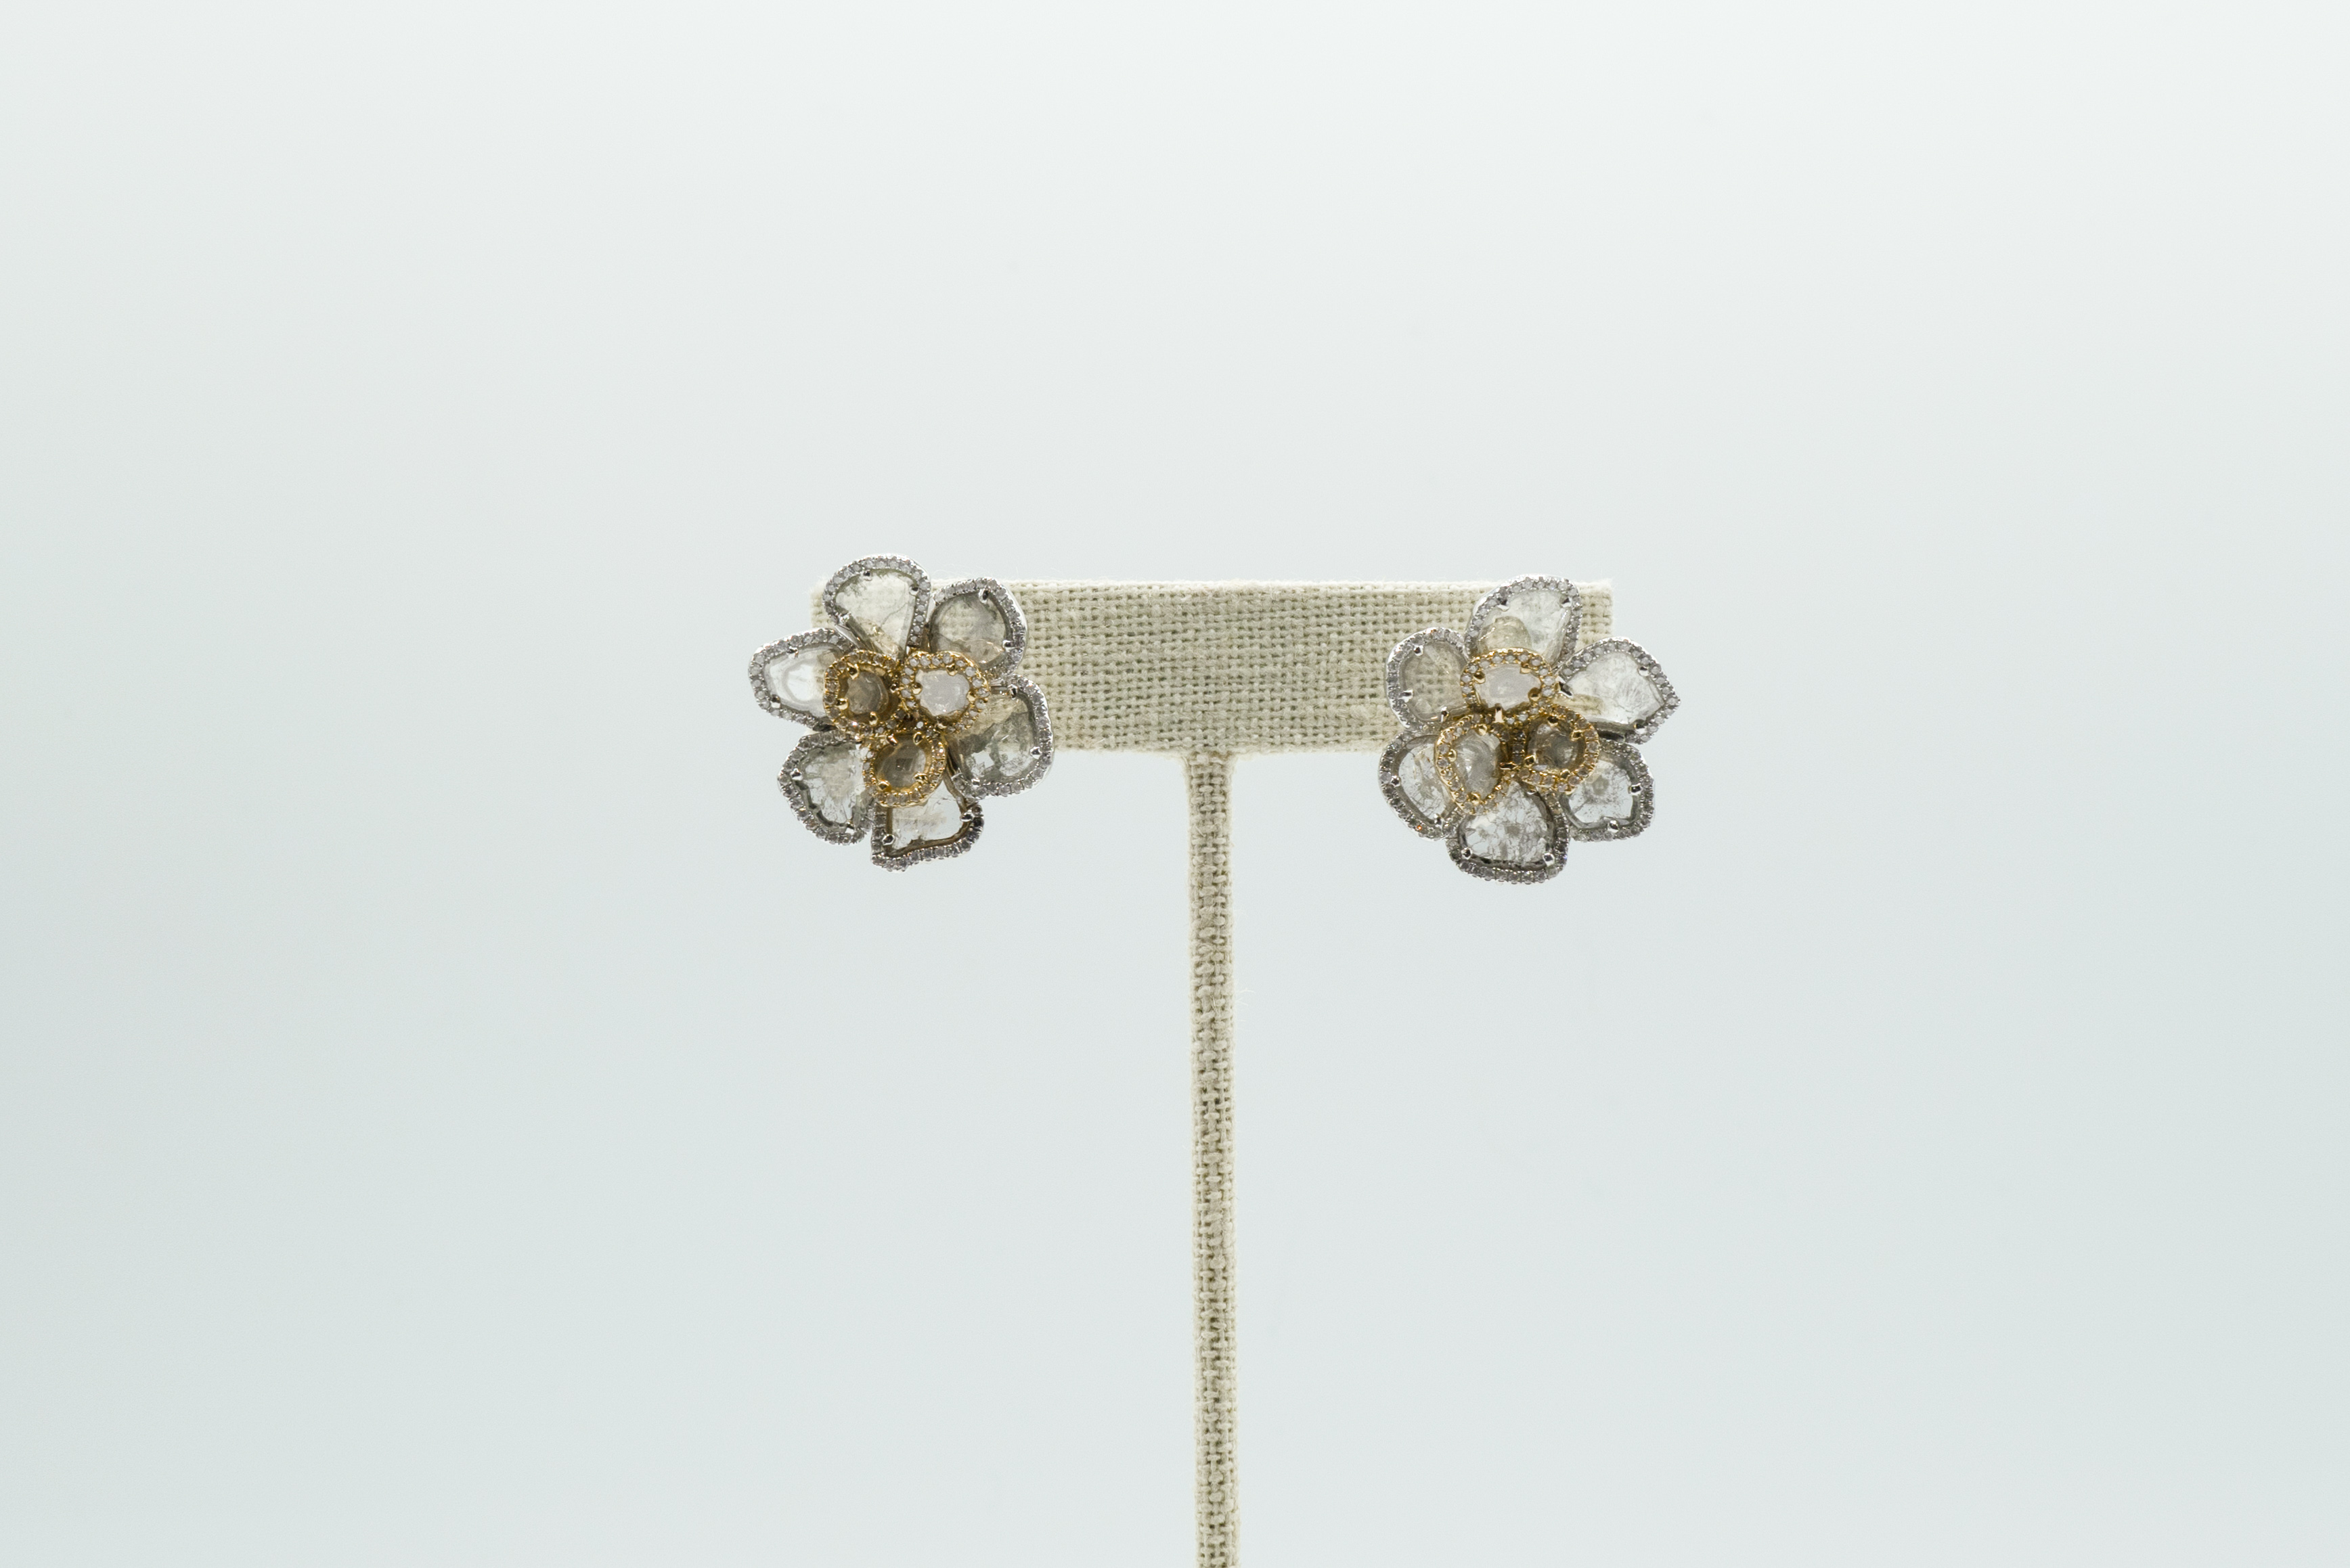 Handmade Diamond Slice Flower Earrings 18k White Gold and 18k Yellow Gold Hidden Hook on Back